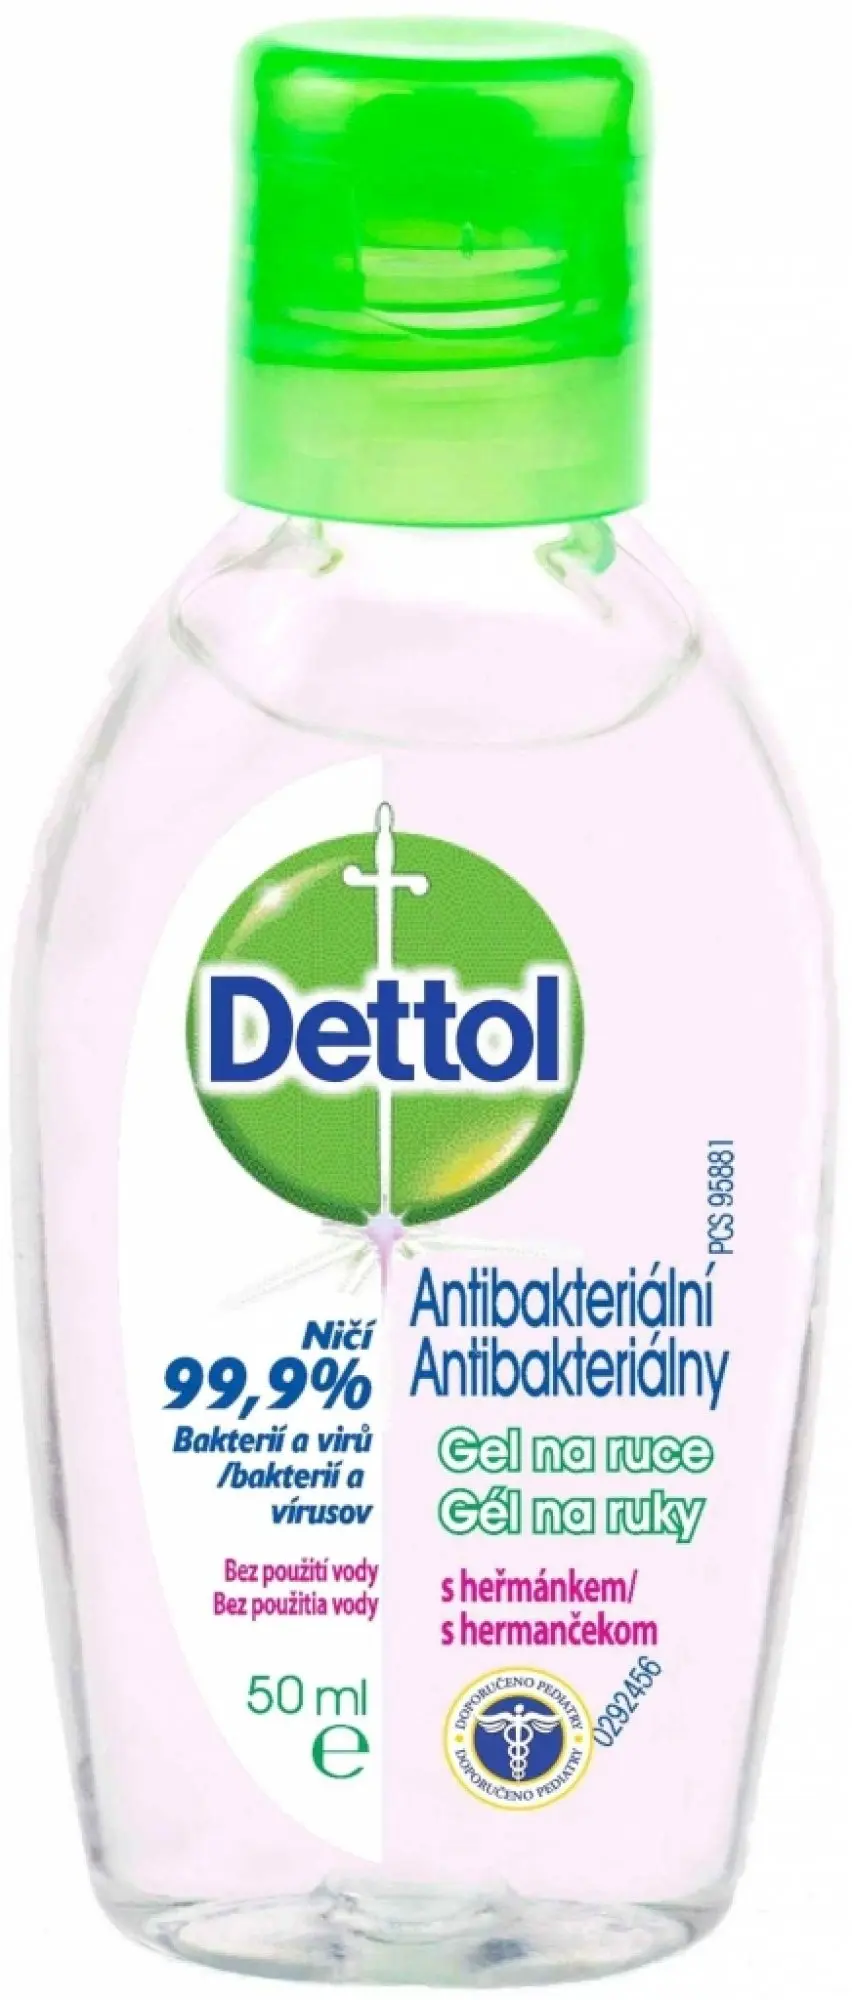 Dettol antibakteriální gel na ruce s heřmánkem 50 ml